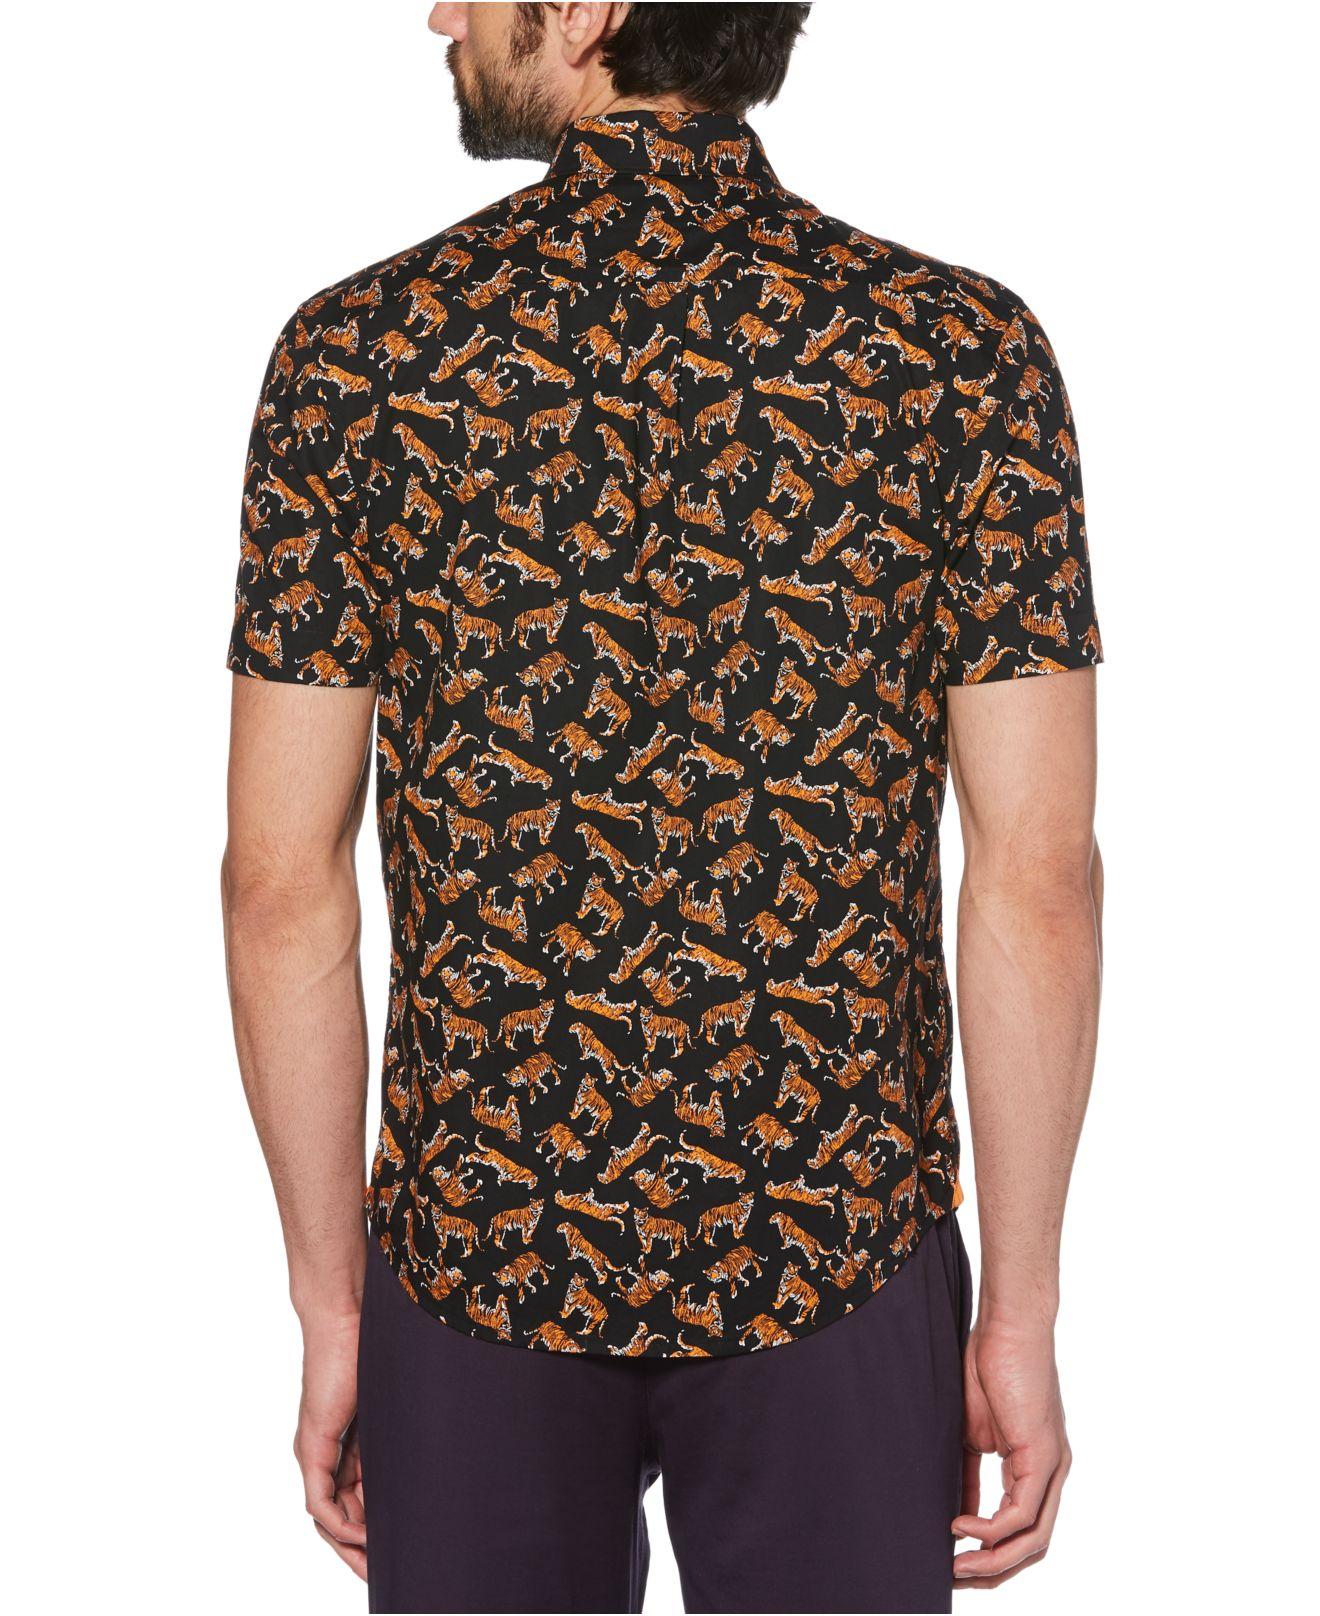 Shop Tiger Print Mandarin Collar Shirt with Solid Shorts and